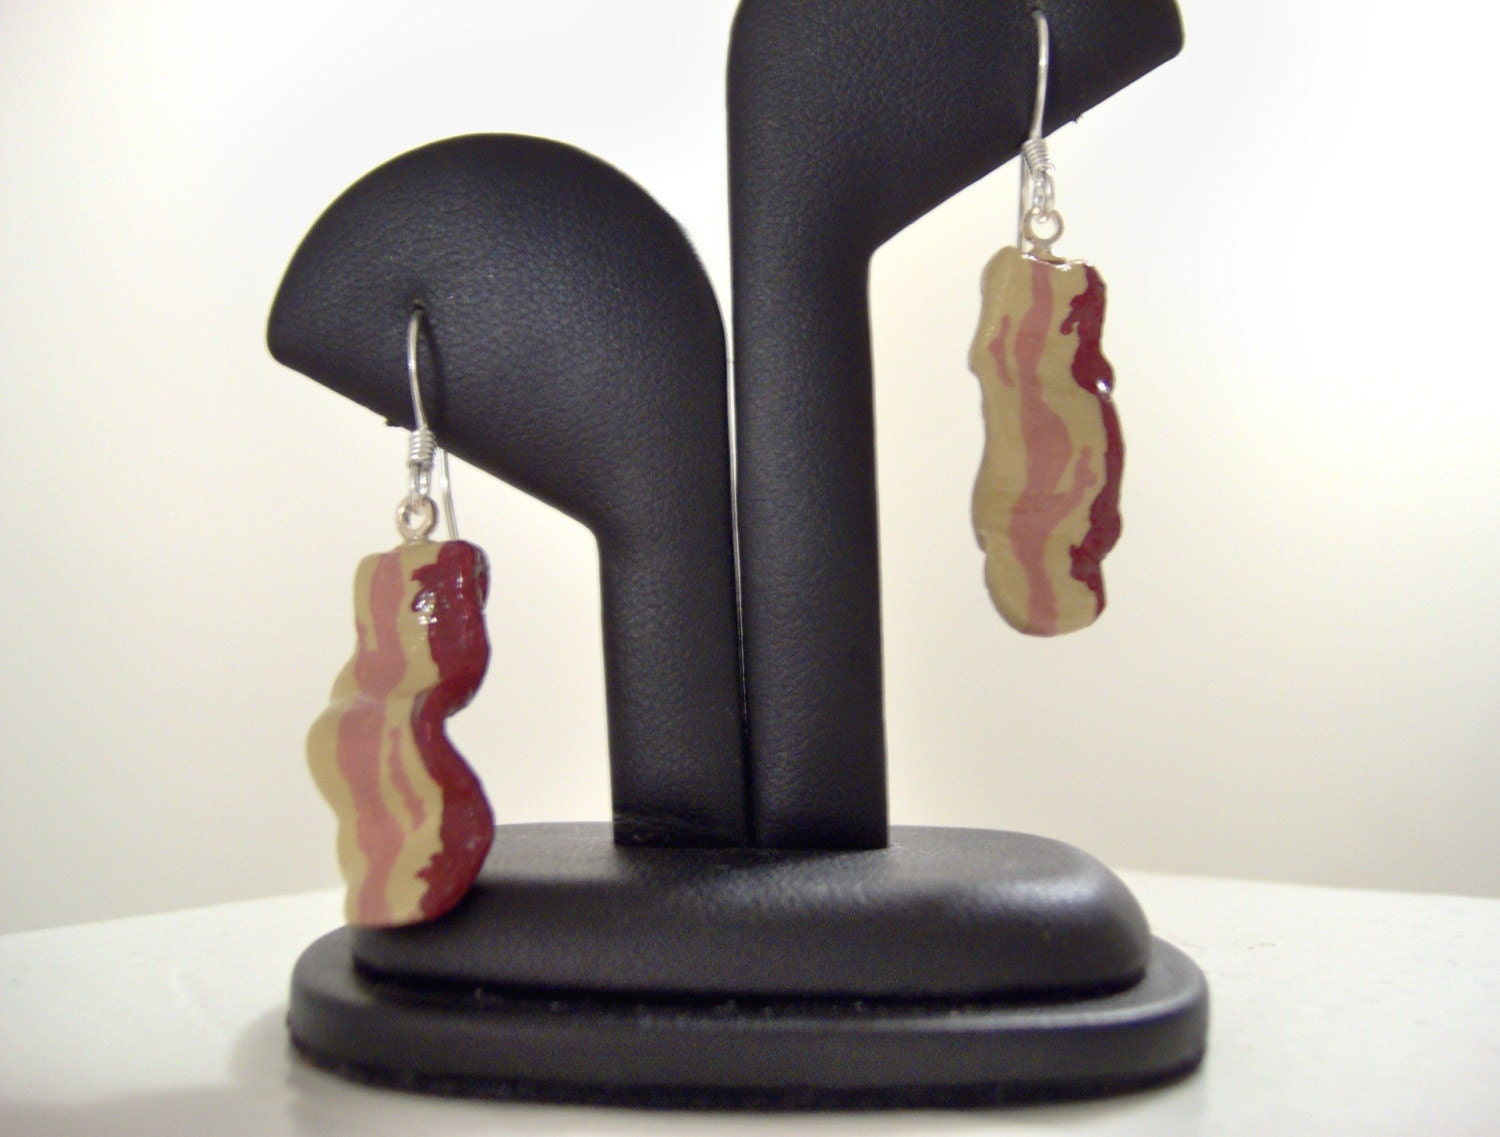 Bacon Earrings